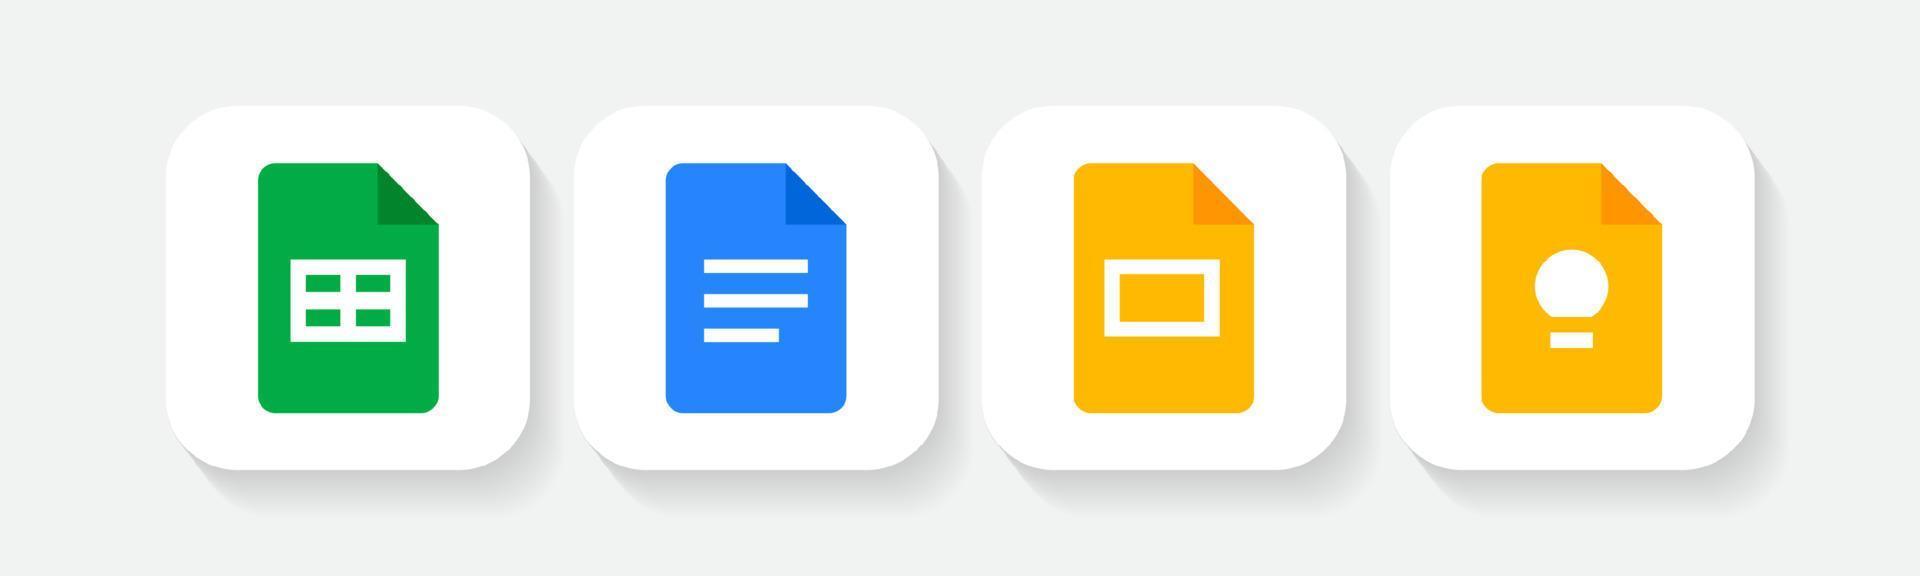 Ange ikon för Google Sheets, docs, slides, håll anteckningar och listlogotyper vektor